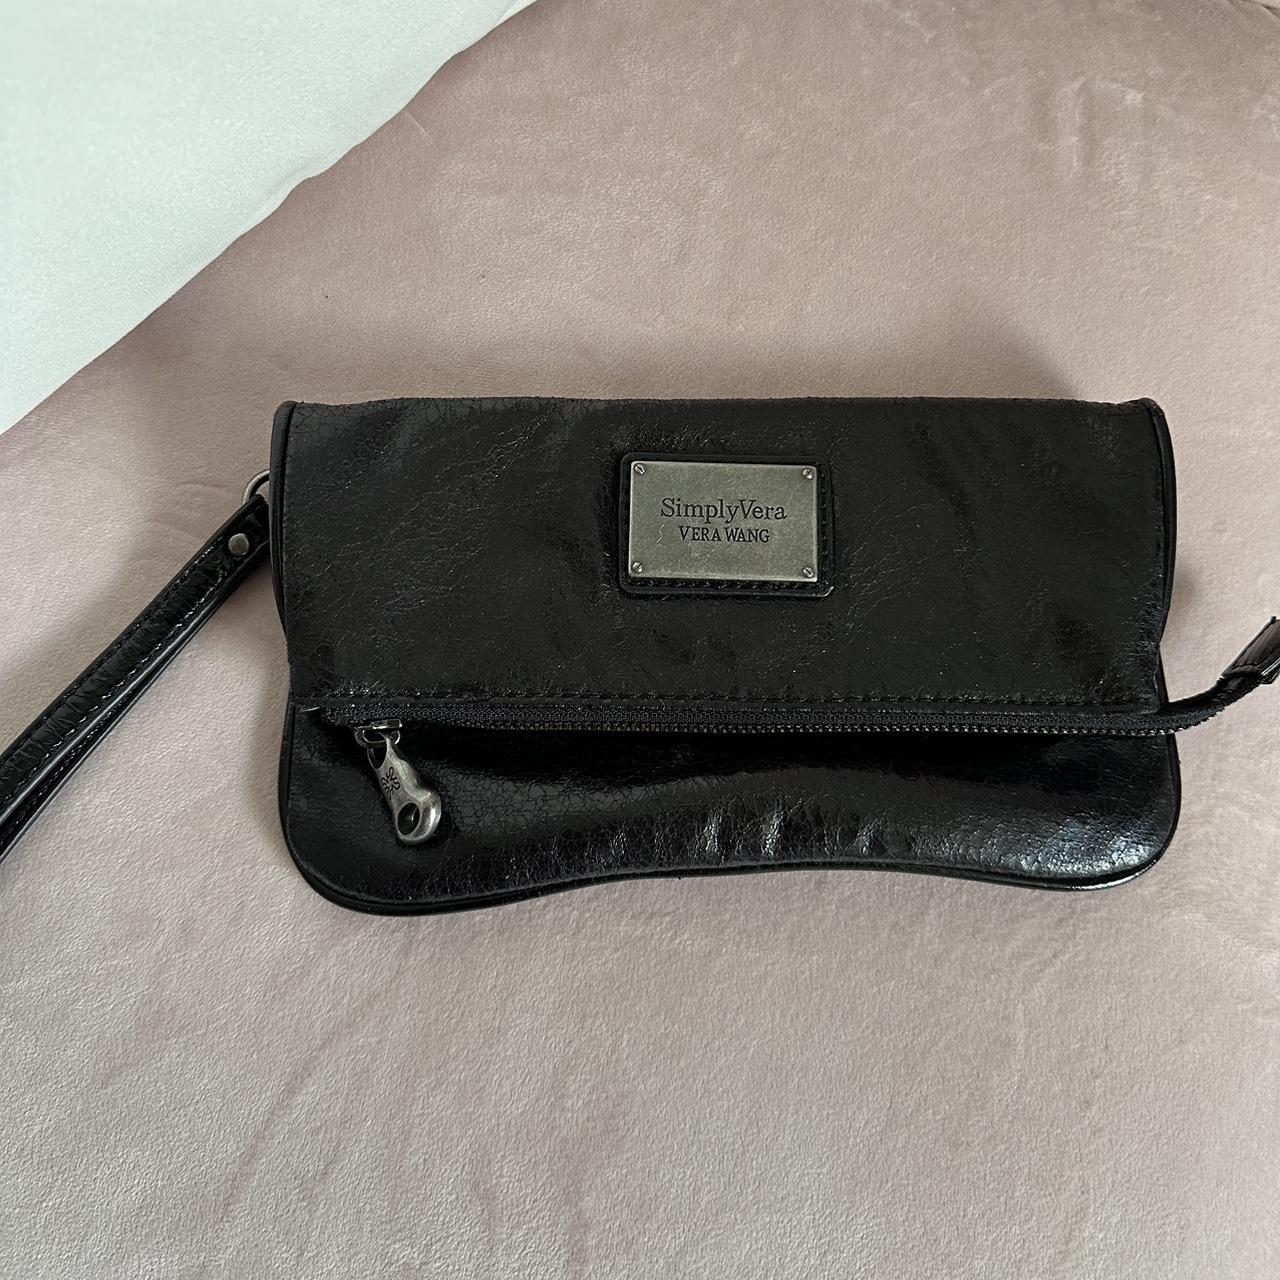 Simply Vera Vera Wang Blue Sidekick Satchel Handbag Shoulder Bag Purse |  Simply vera wang, Purses and bags, Satchel handbags